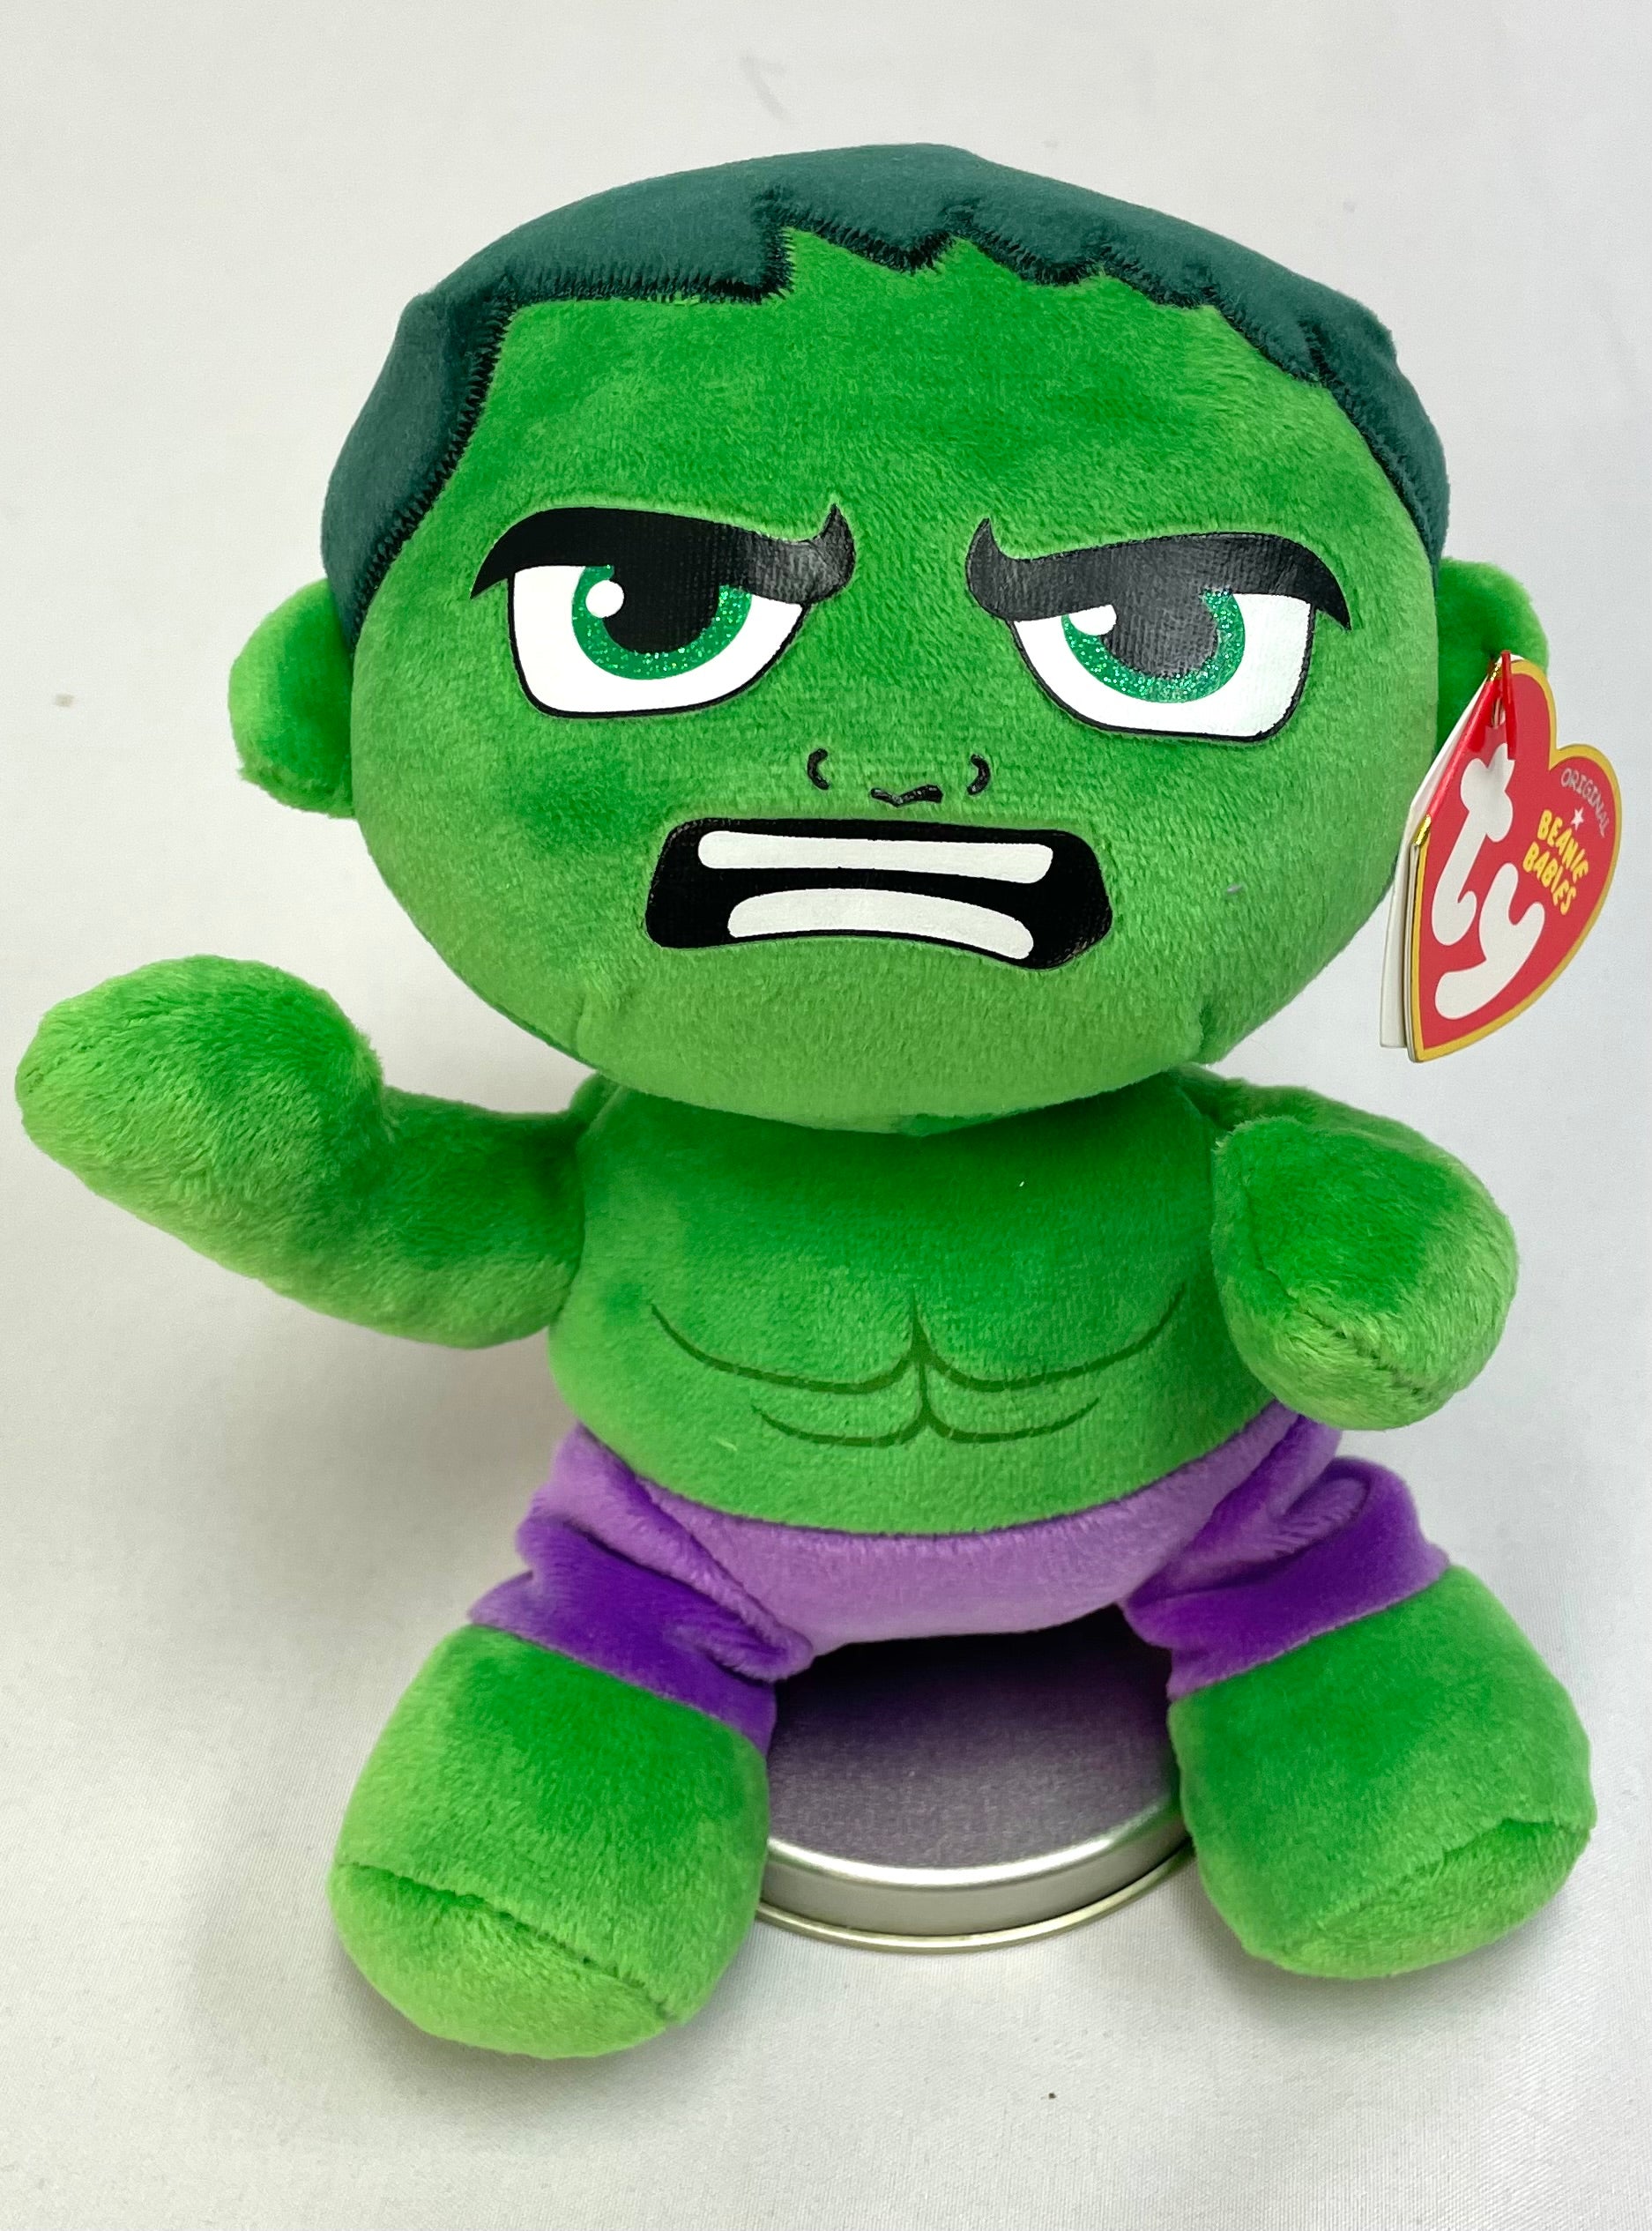 Marvel’s Plush Hulk Beanie